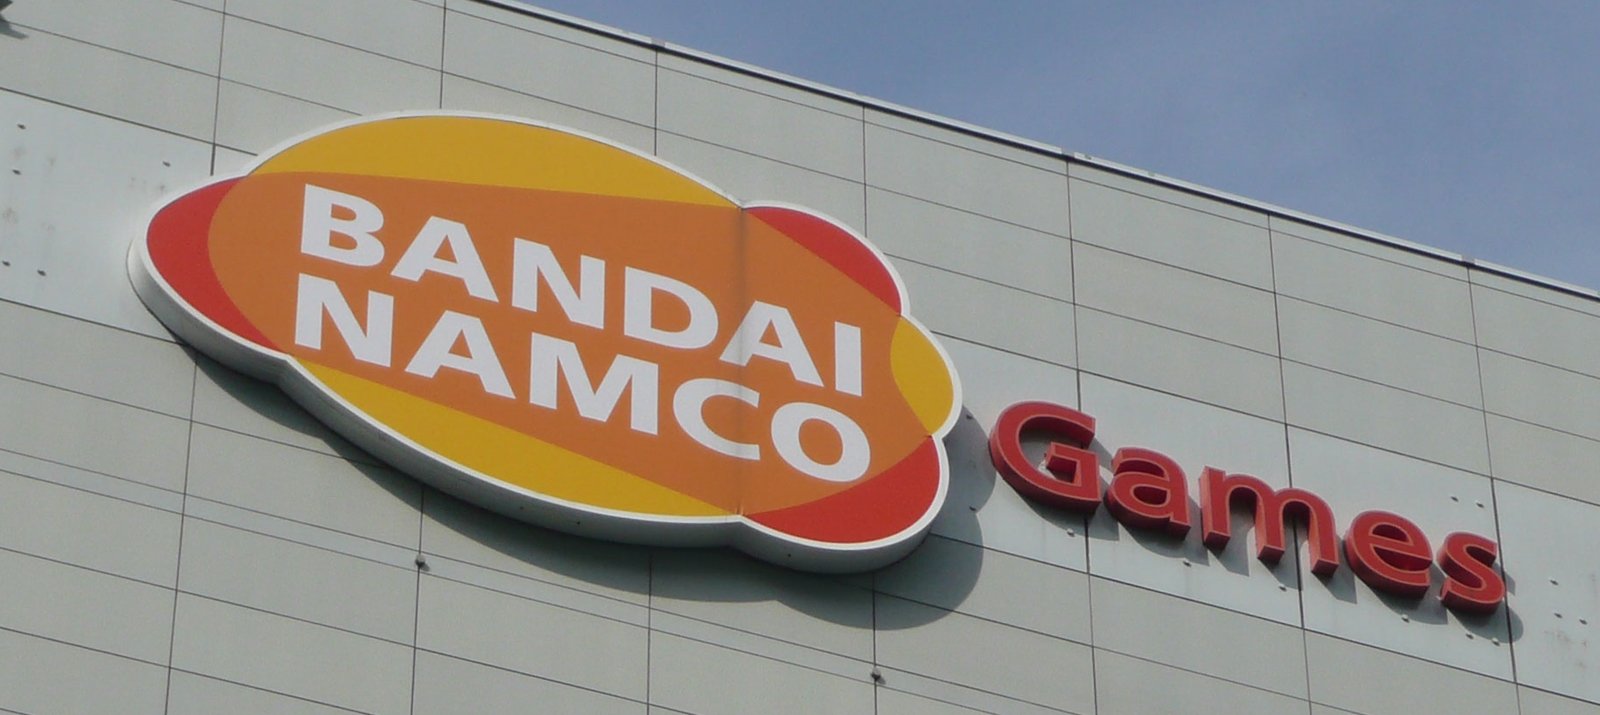 Bandai Namco registrou três novas propriedades intelectuais nas últimas semanas.